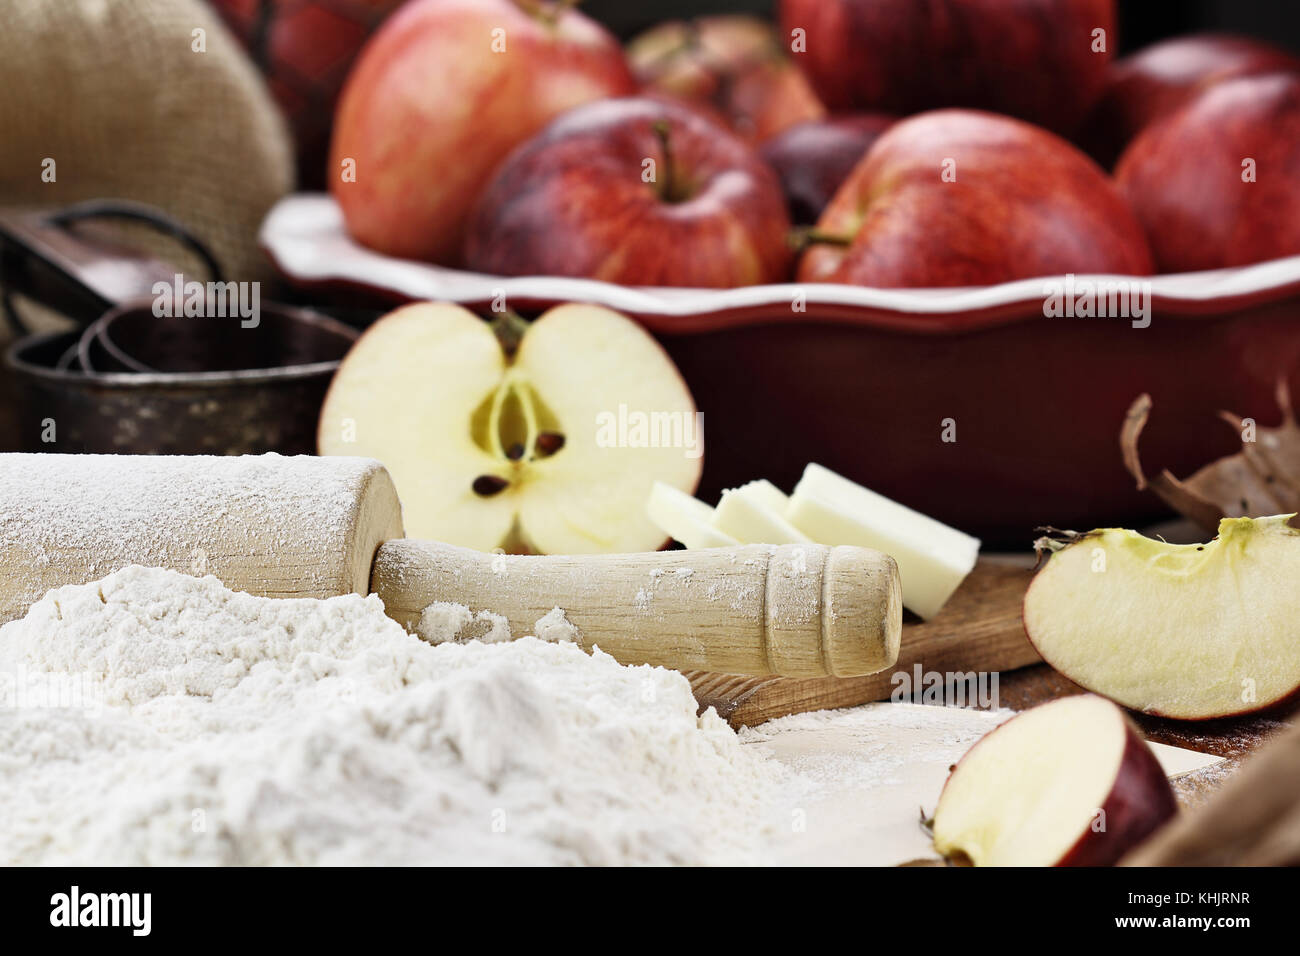 In legno antico mattarello spolverata di farina bianca su un tavolo rustico. apple ingredienti torta di mele e burro in background. extreme shallow dept Foto Stock